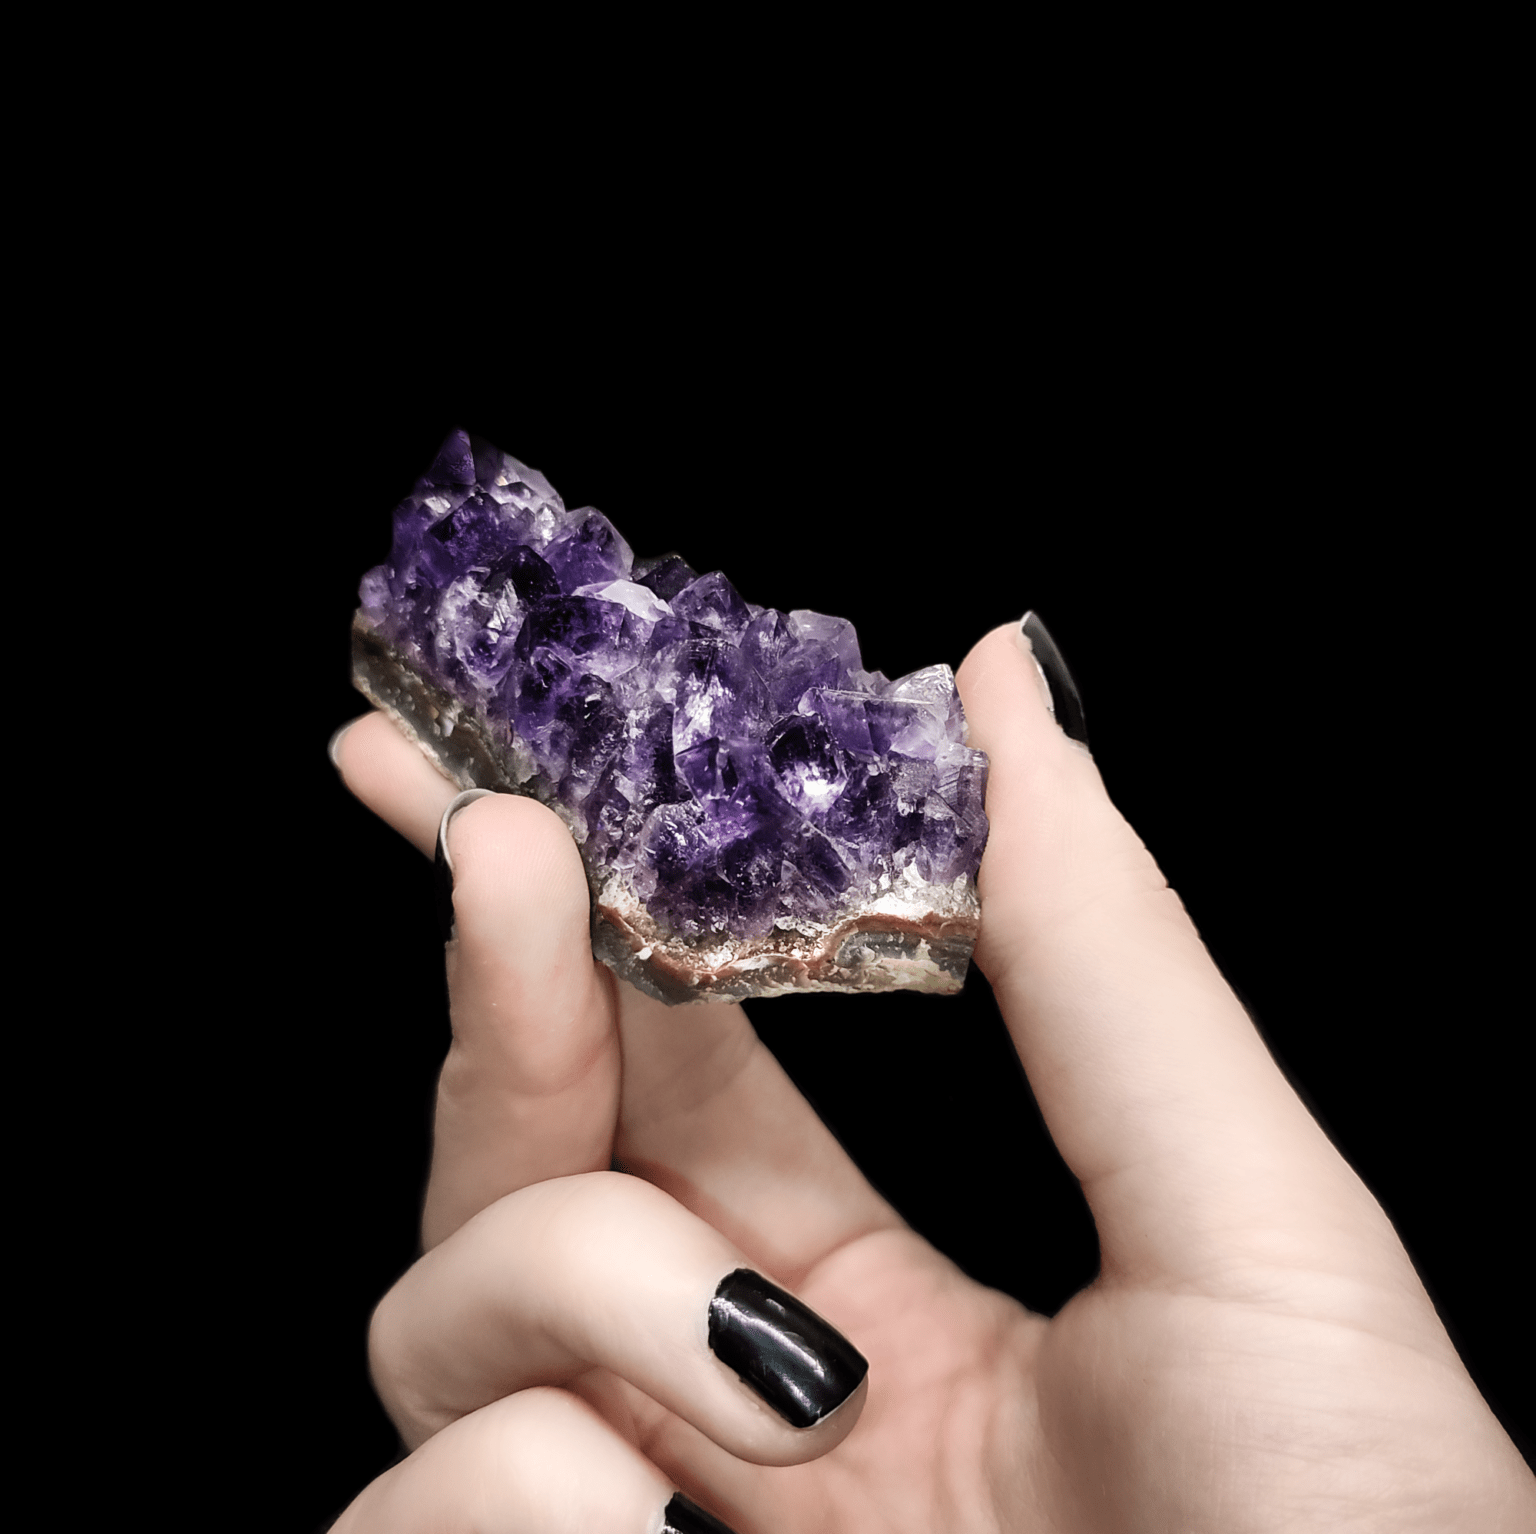 Produktpräsentation einer makellosen Amethyst Stufe in tiefstem Violett. Die Kristalle des Amethysten sind gut zu erkennen.